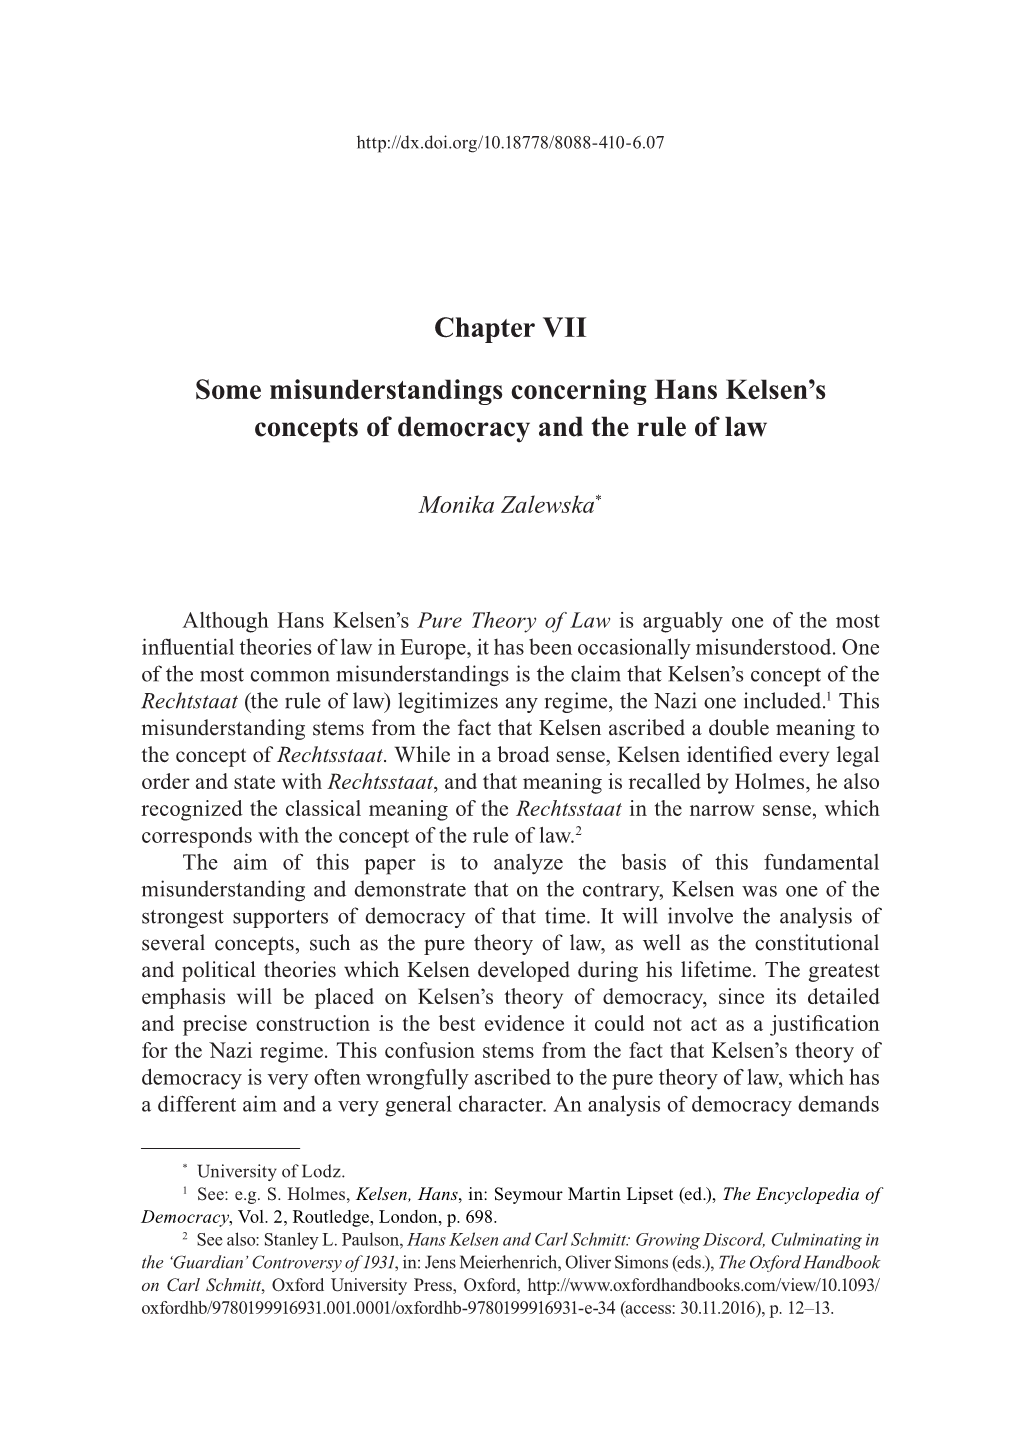 Chapter VII Some Misunderstandings Concerning Hans Kelsen's Concepts